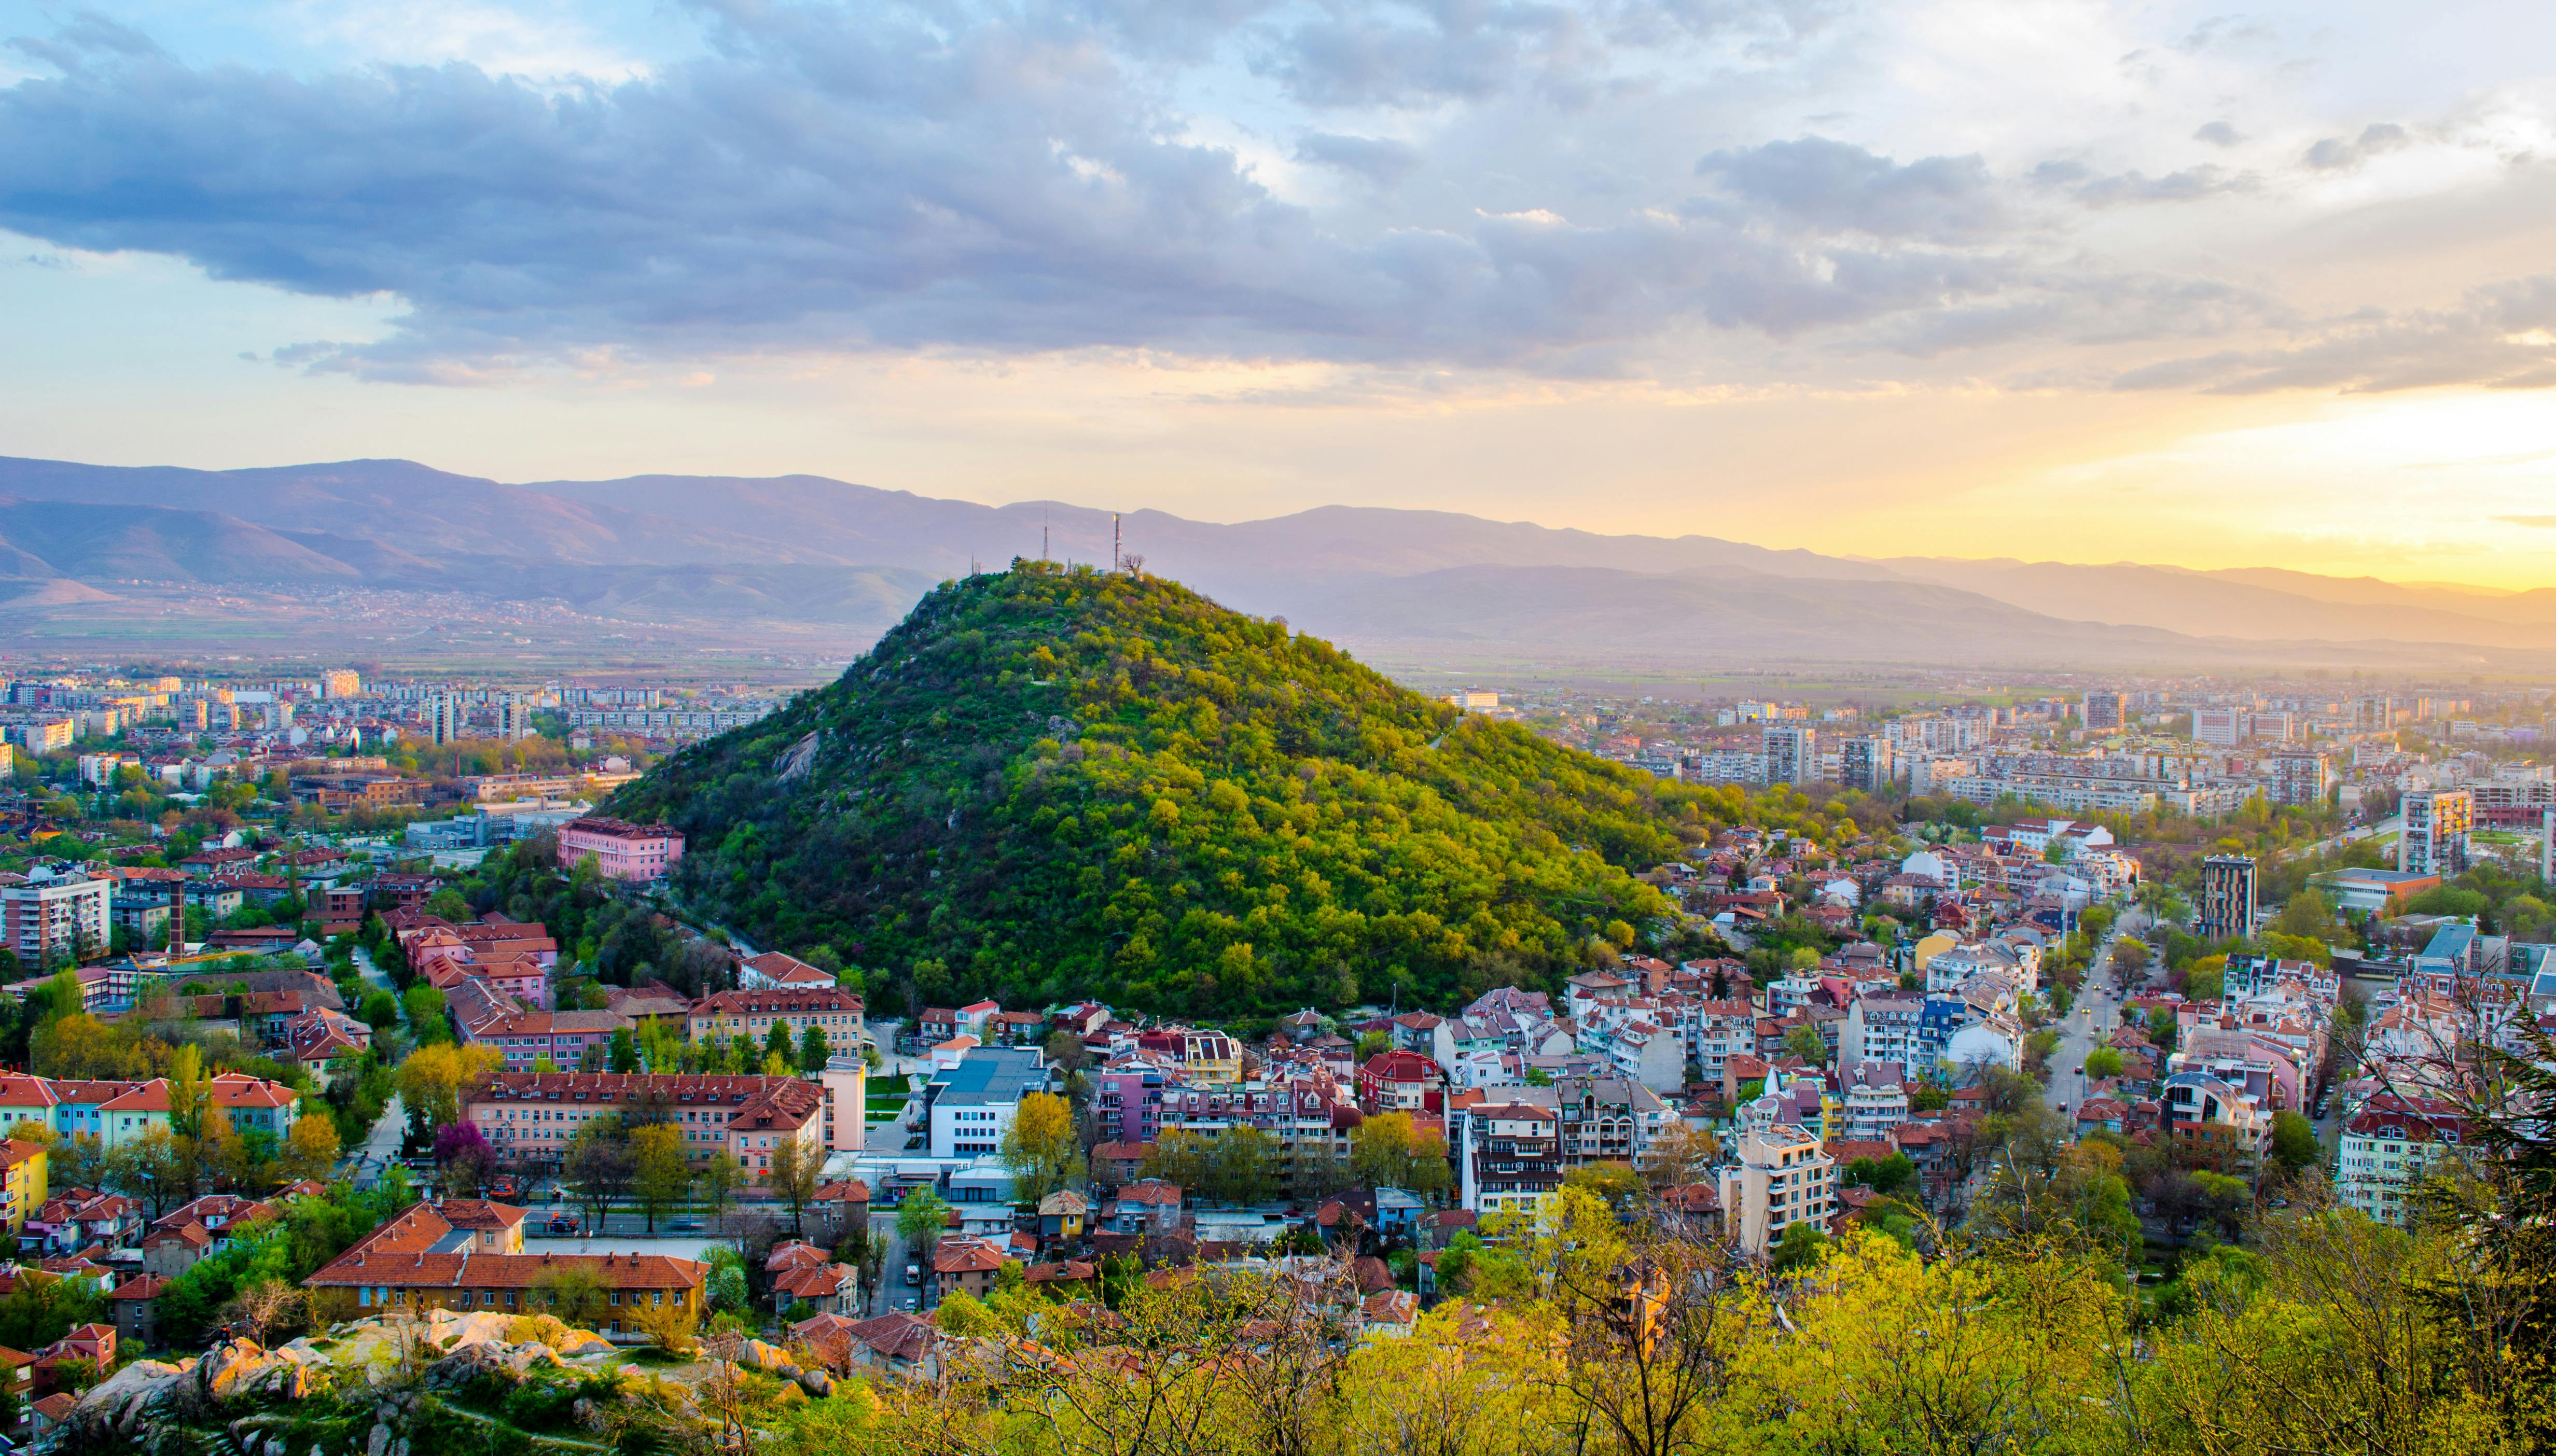 Sieben Hügel von Plovdiv geführte Tour